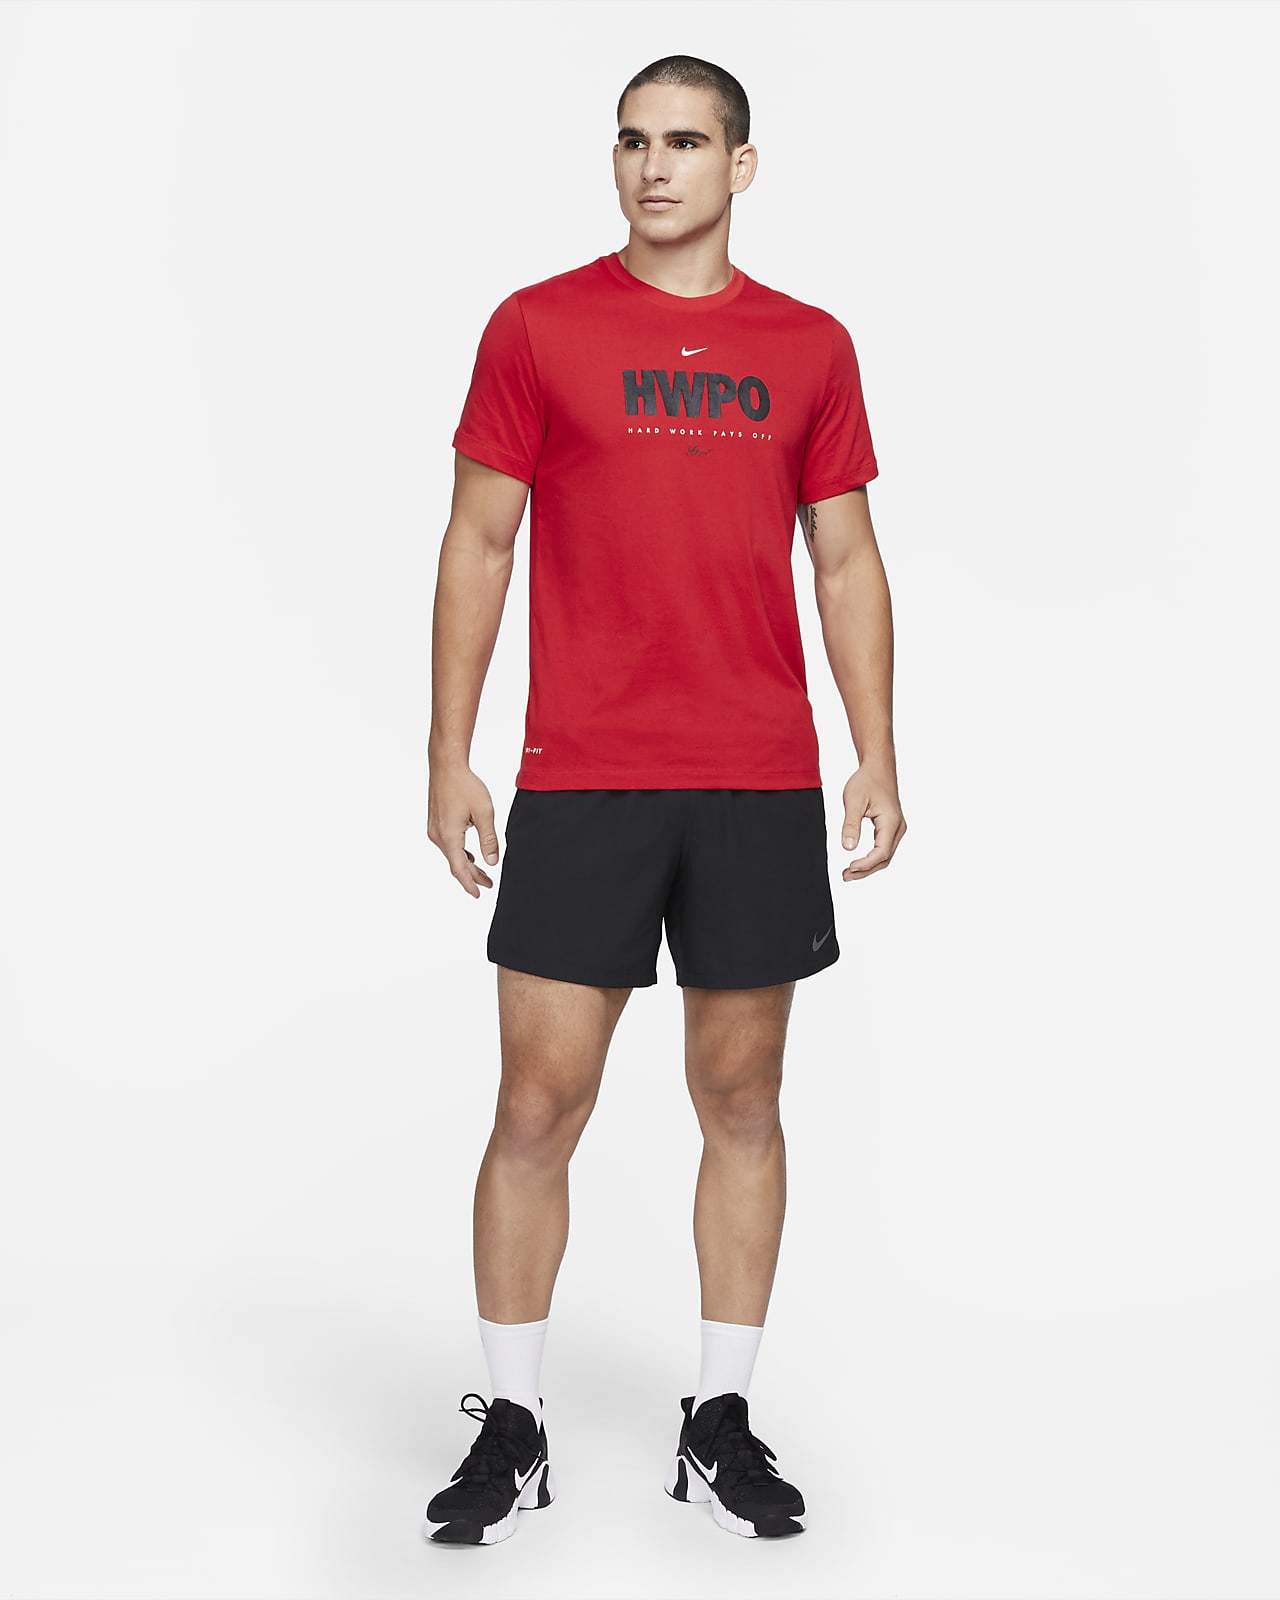 compañera de clases Ejército Animado Nike Dri-FIT "HWPO" Camiseta de entrenamiento - Hombre. Nike ES